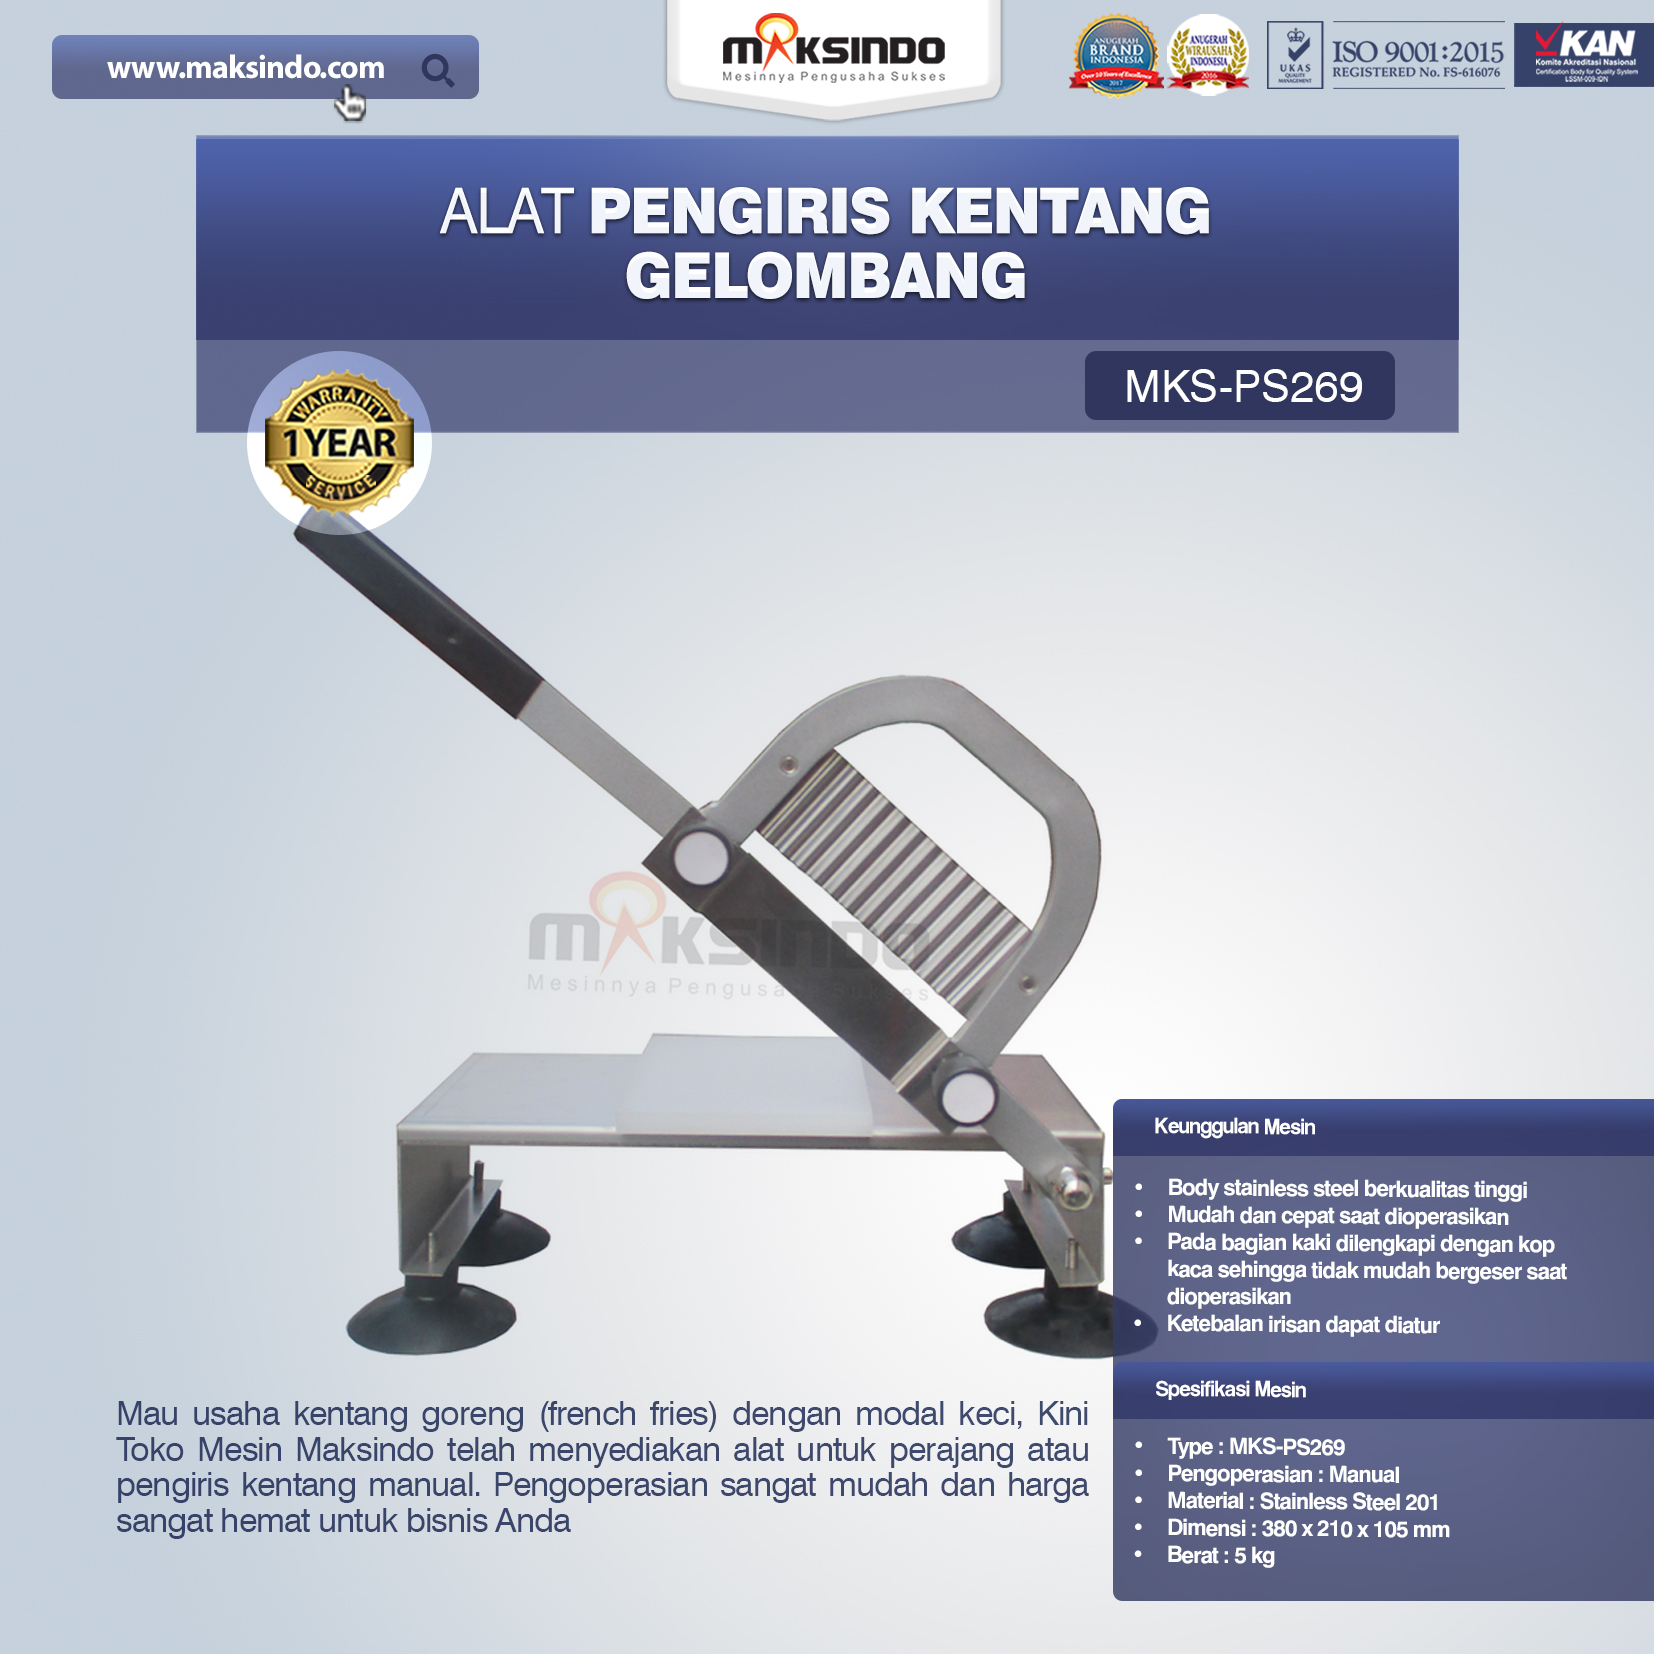 Jual Alat Pengiris Kentang Gelombang MKS-PS269 di Semarang